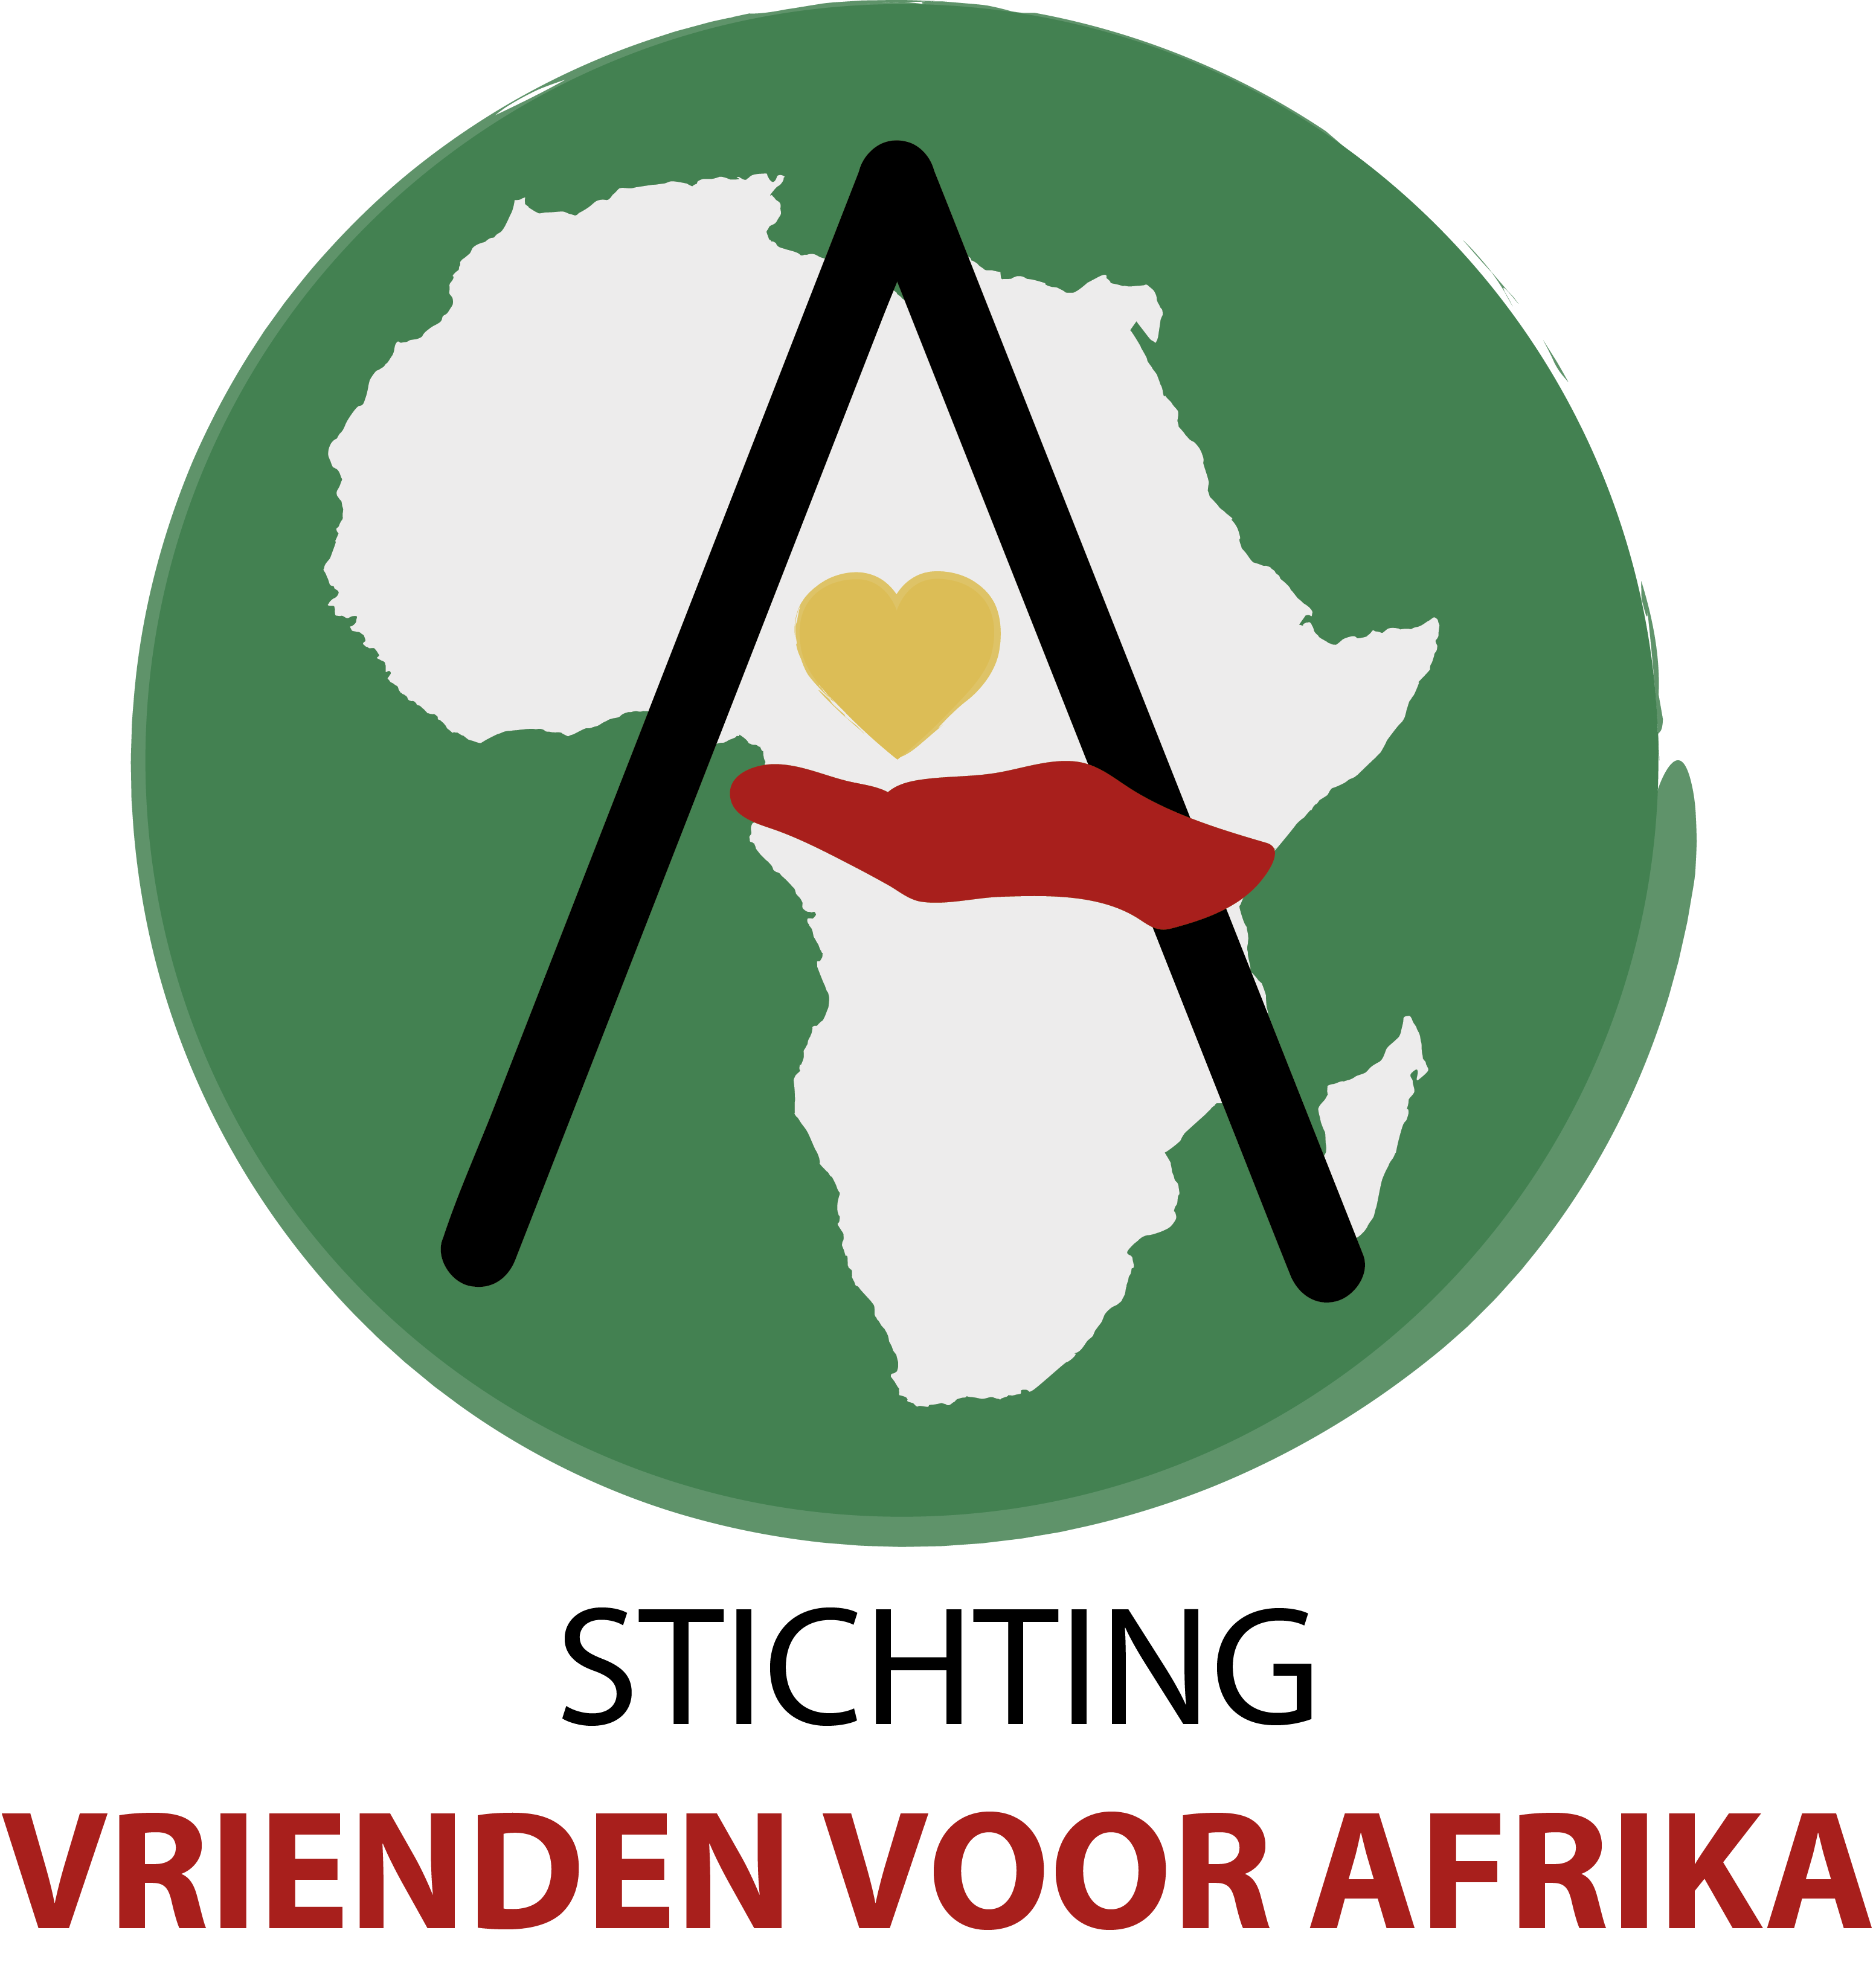 Stichting Vrienden voor Afrika logo